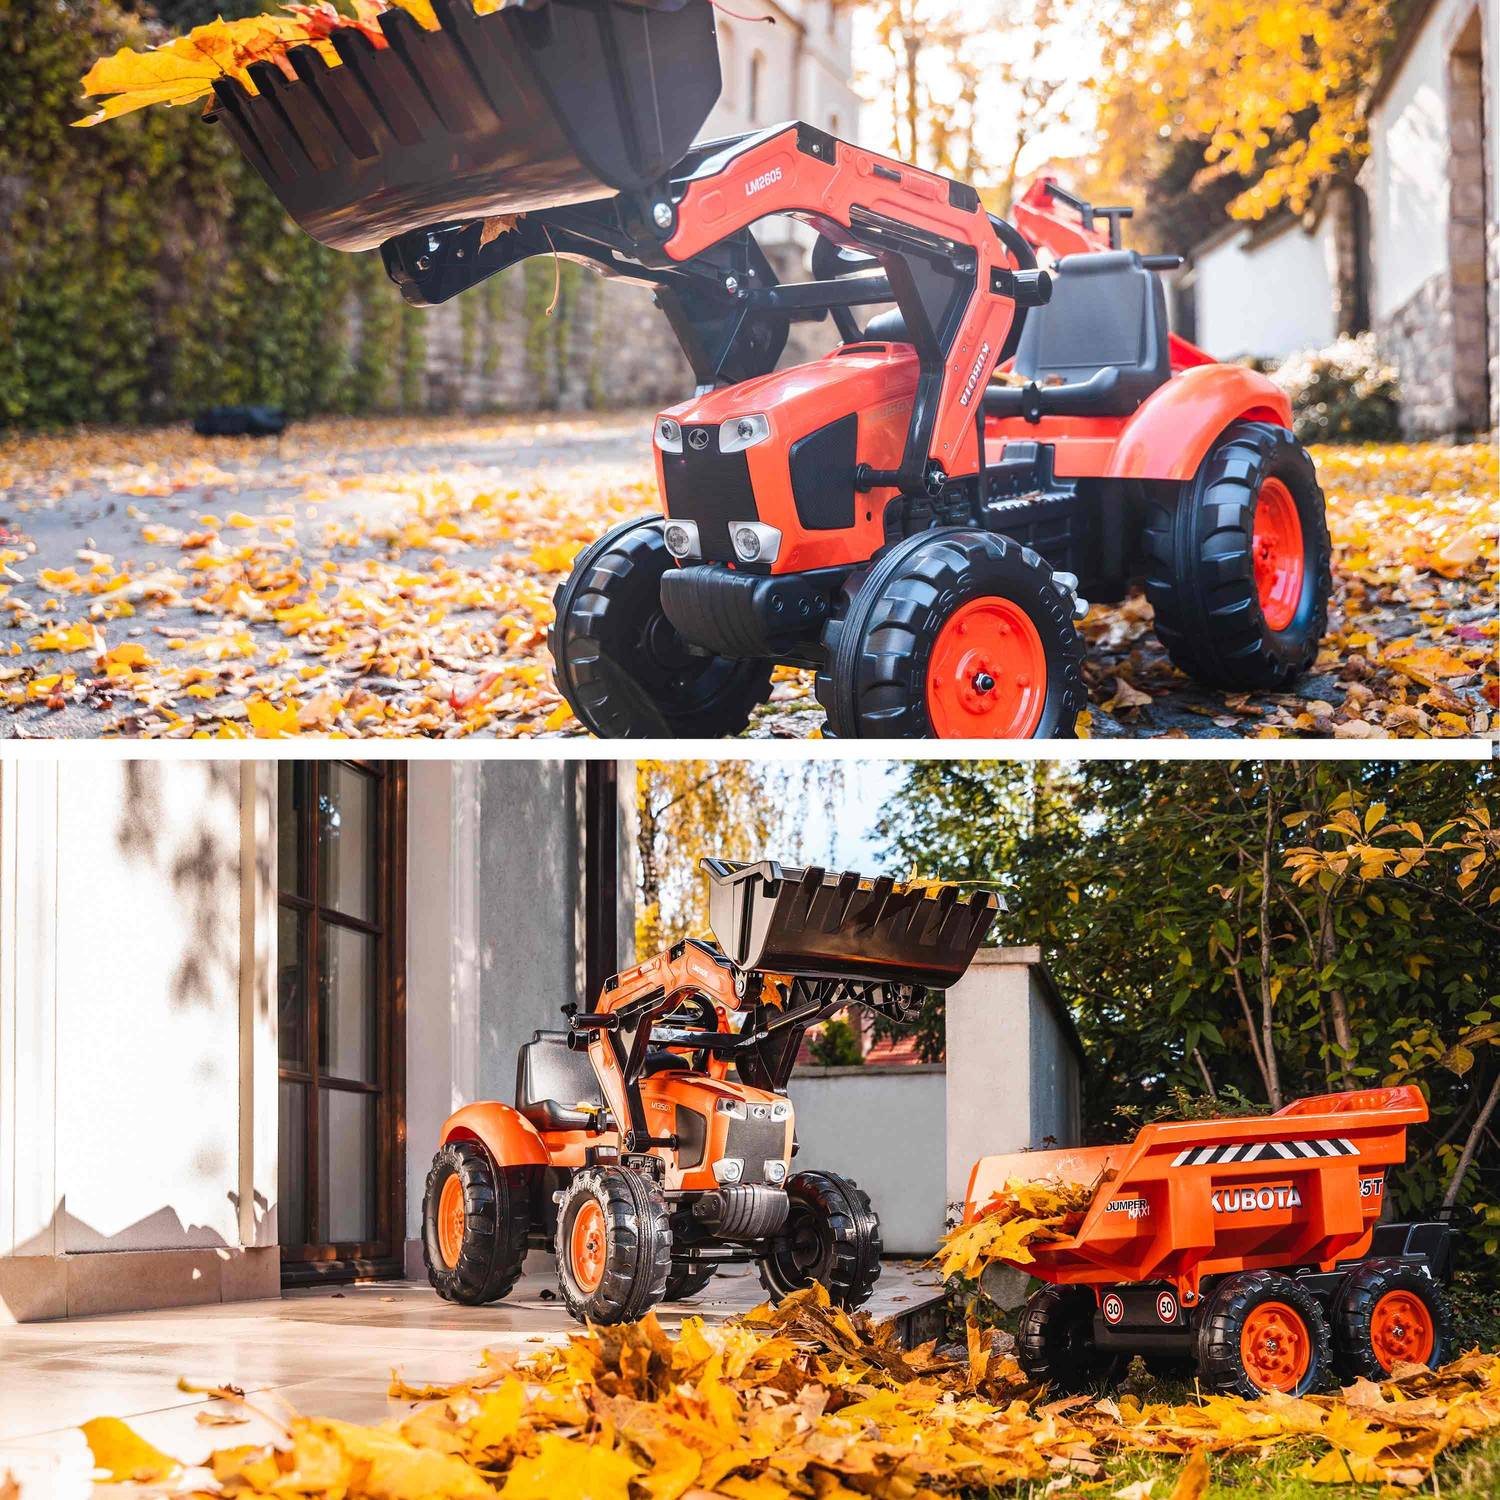  Tractopelle Kubota pour enfant - Bob - Tracteur à pédales avec excavatrice et remorque basculante 4 roues, orange Photo5